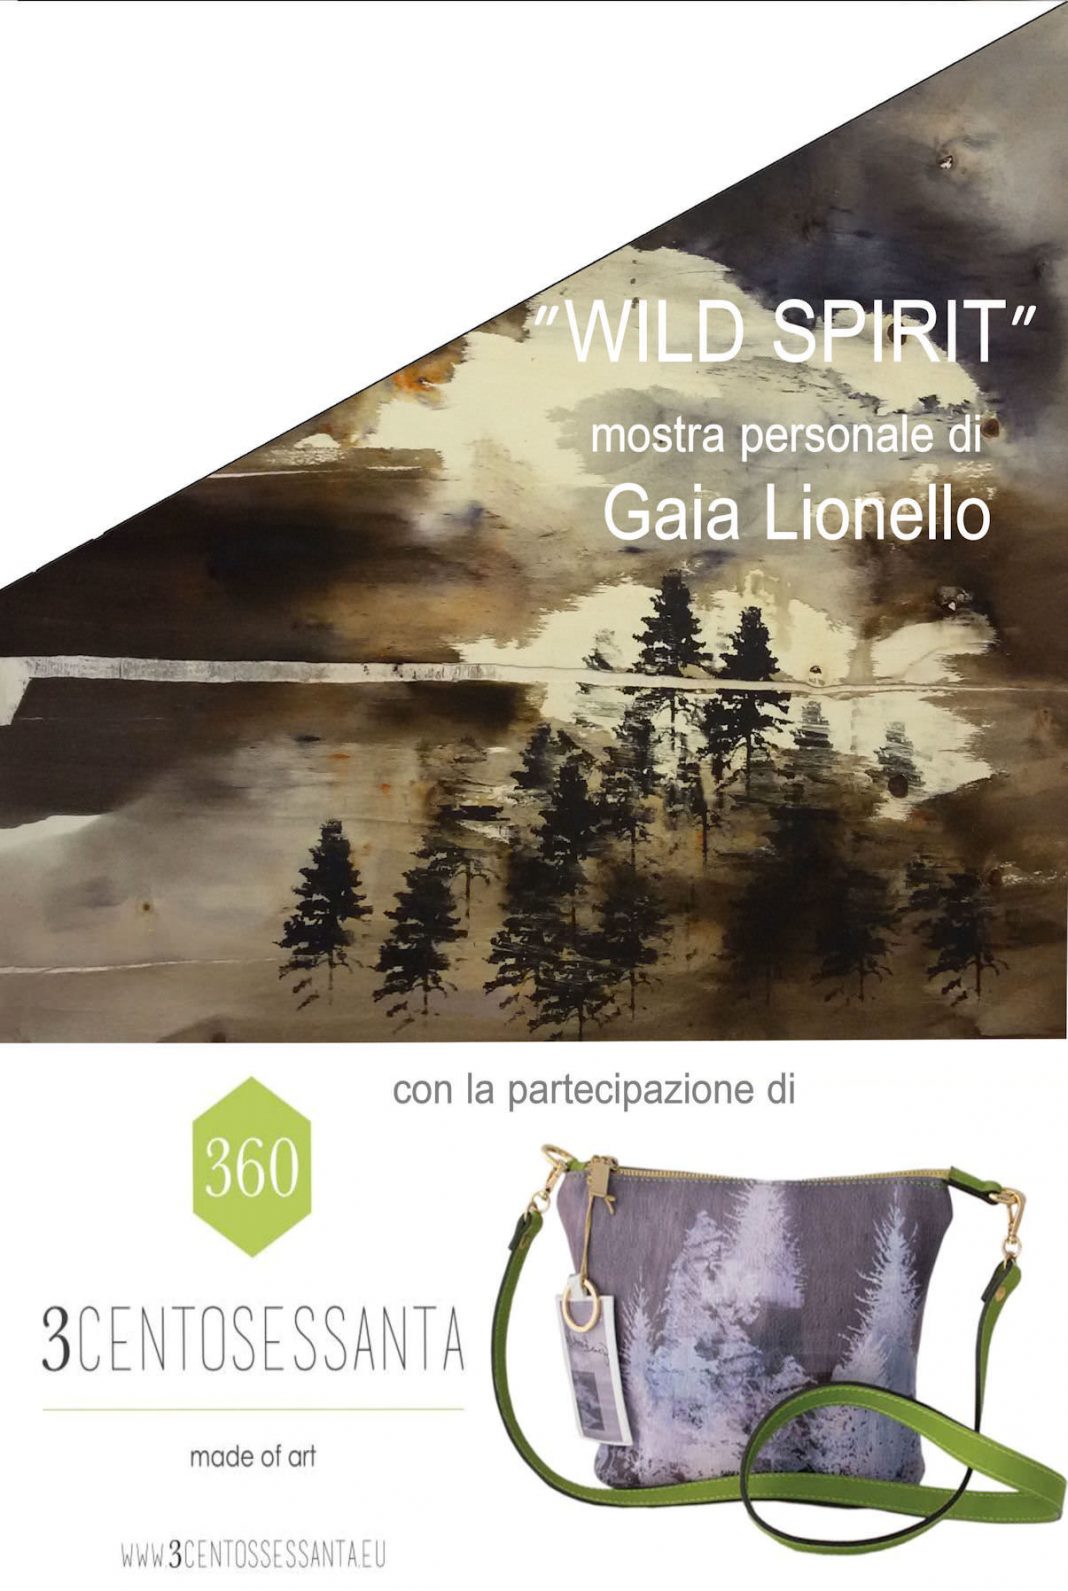 Gaia Lionello – Wild spirithttps://www.exibart.com/repository/media/eventi/2016/04/gaia-lionello-8211-wild-spirit-1068x1591.jpg